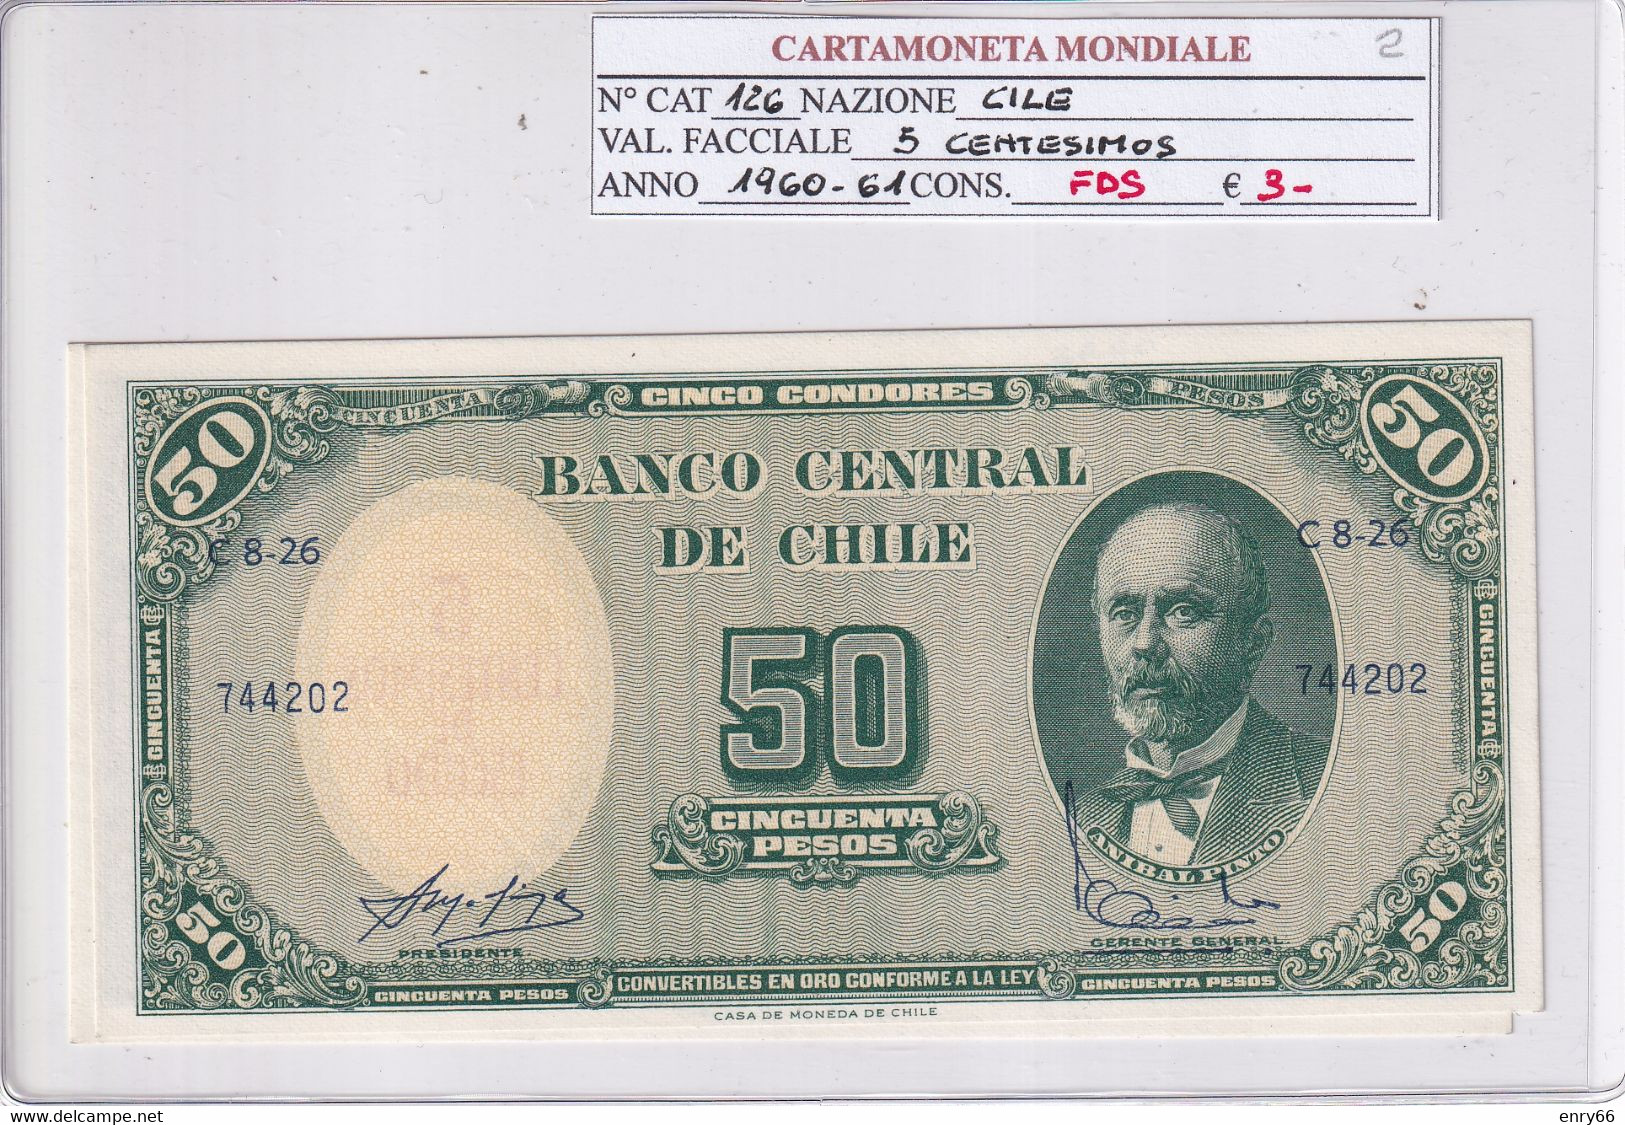 CILE 50 PESOS 1960-61 P126 - Cile